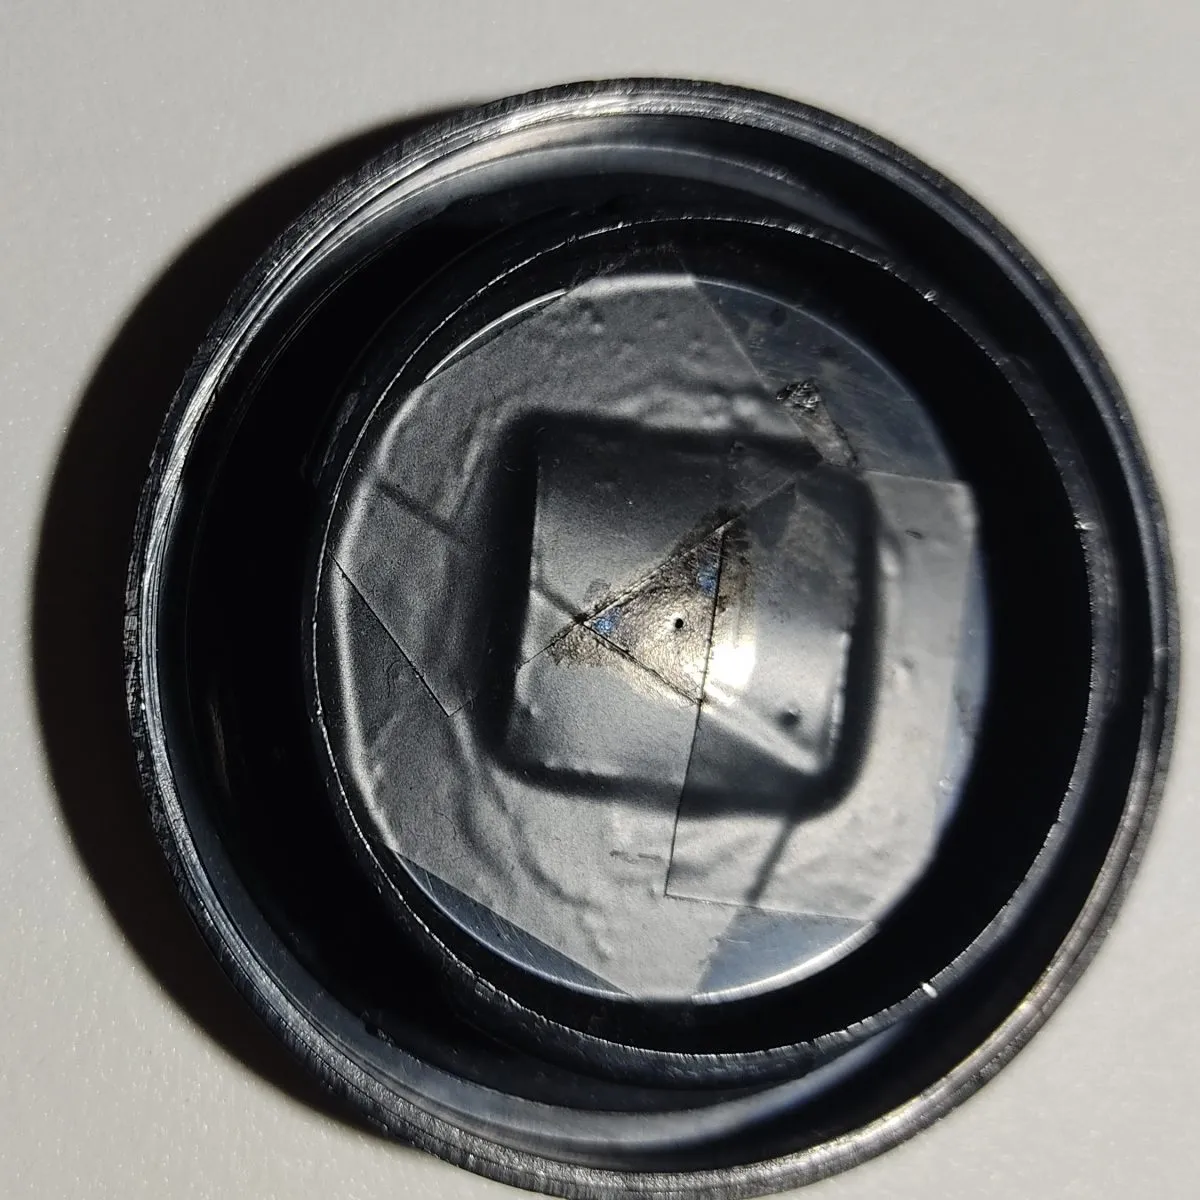 Il lamierino è attaccato sul retro del tappo con colla e nastro isolante da elettricista (di colore nero e con superficie opaca). Si vede chiaramente il forellino.